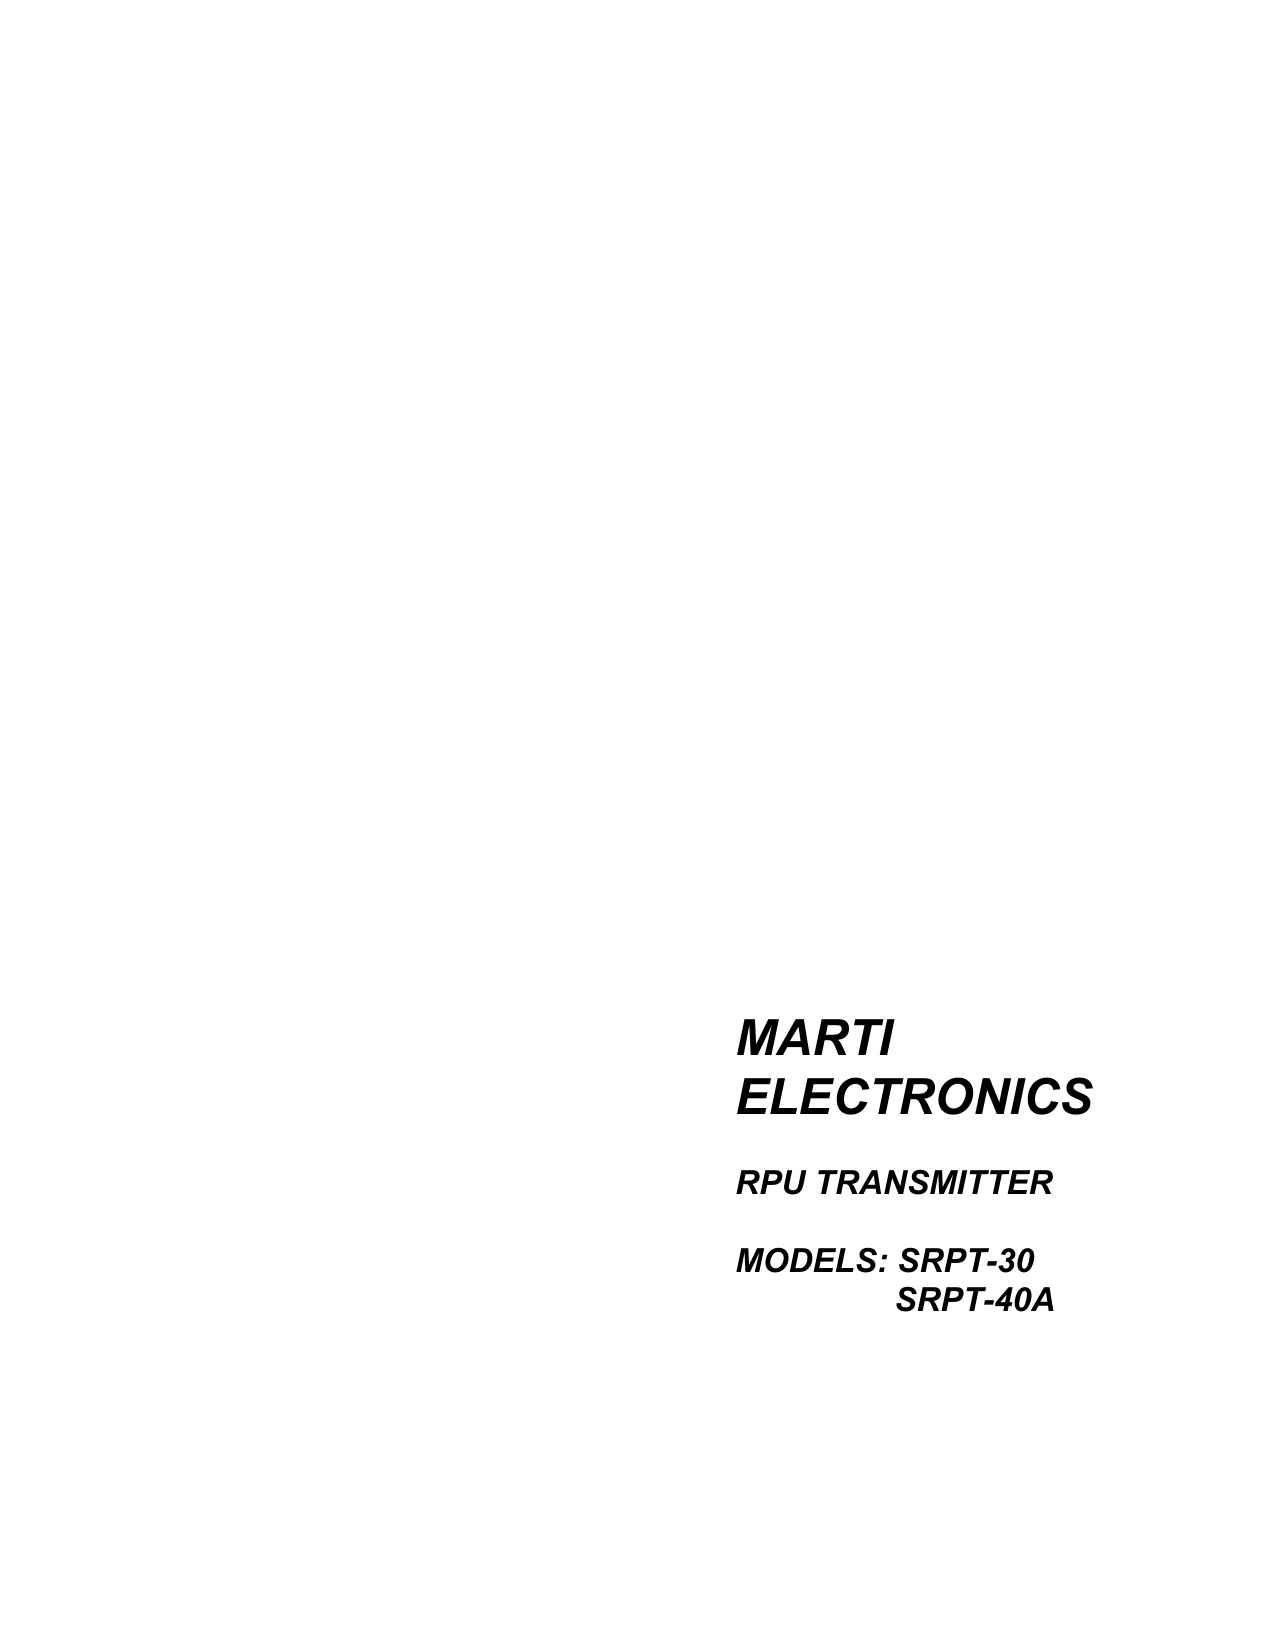 MARTIELECTRONICSRPU TRANSMITTERMODELS: SRPT-30 SRPT-40A